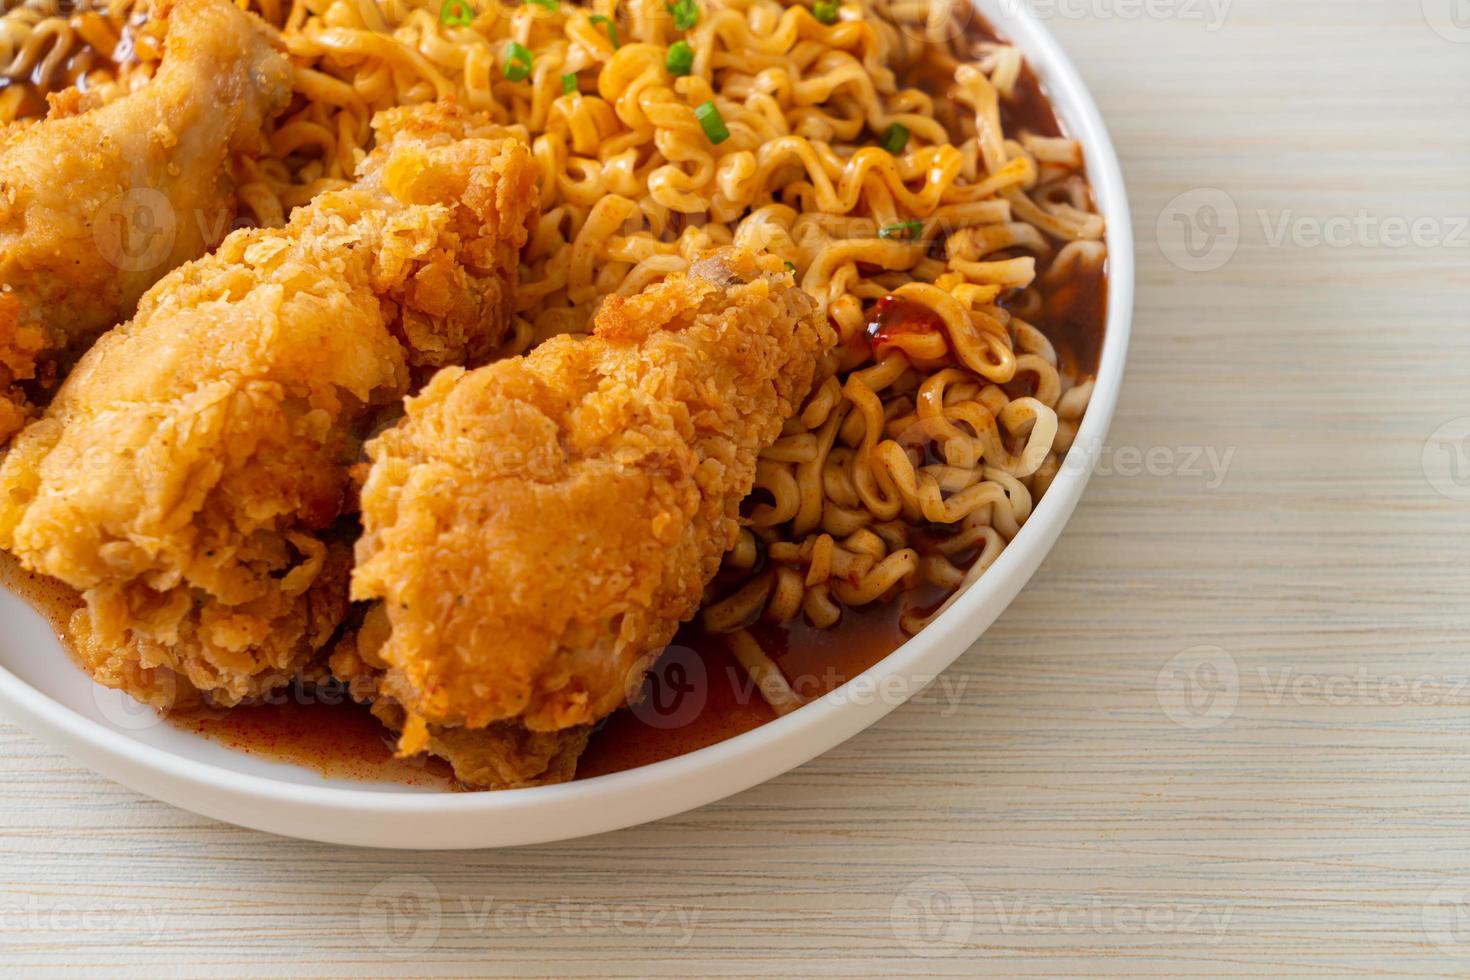 tagliatelle istantanee coreane con pollo fritto o ramyeon di pollo fritto foto